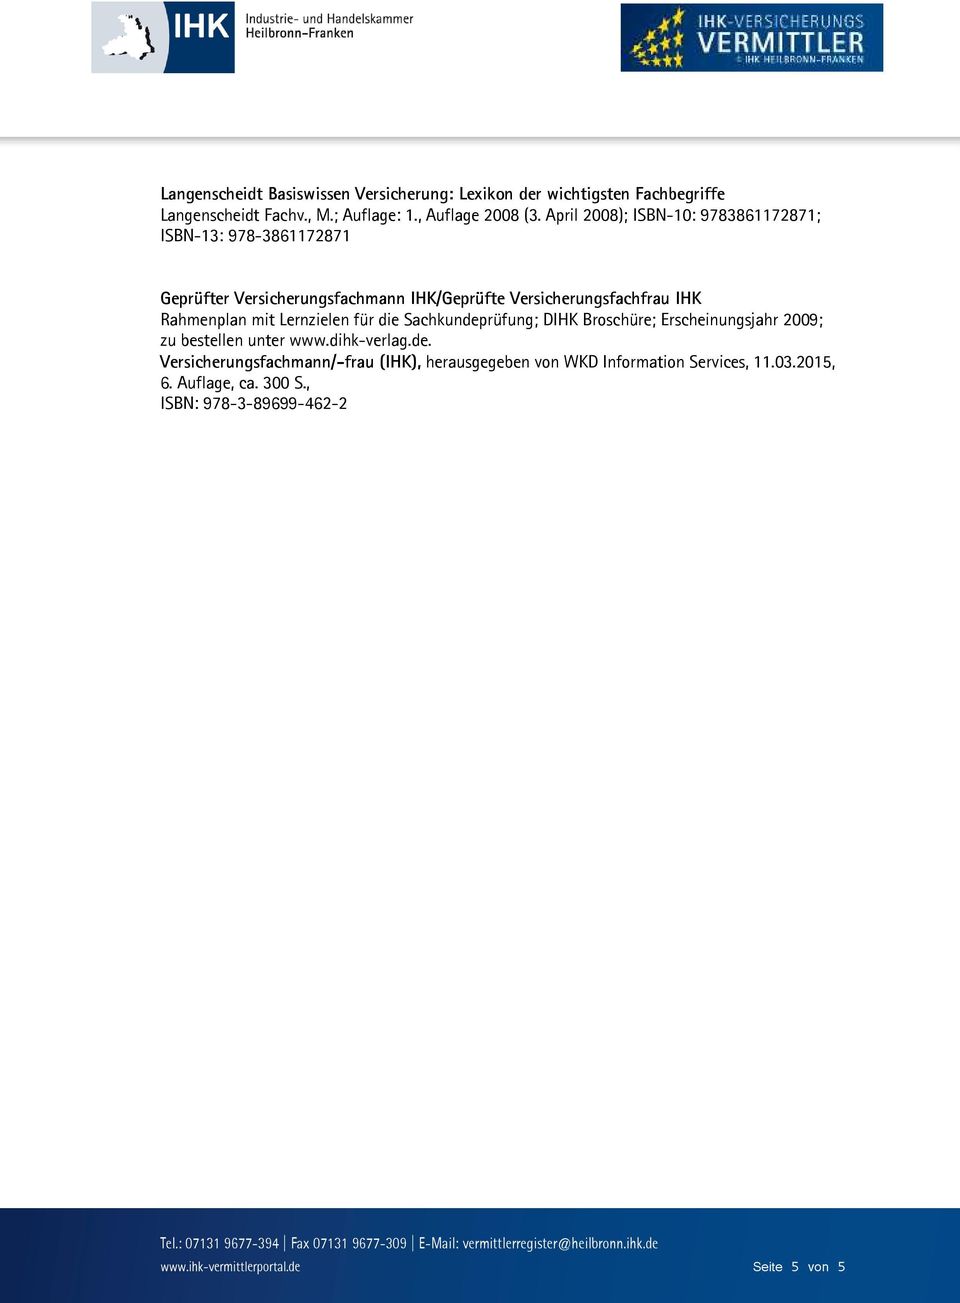 mit Lernzielen für die Sachkundeprüfung; DIHK Broschüre; Erscheinungsjahr 2009; zu bestellen unter www.dihk-verlag.de. Versicherungsfachmann/-frau (IHK), herausgegeben von WKD Information Services, 11.